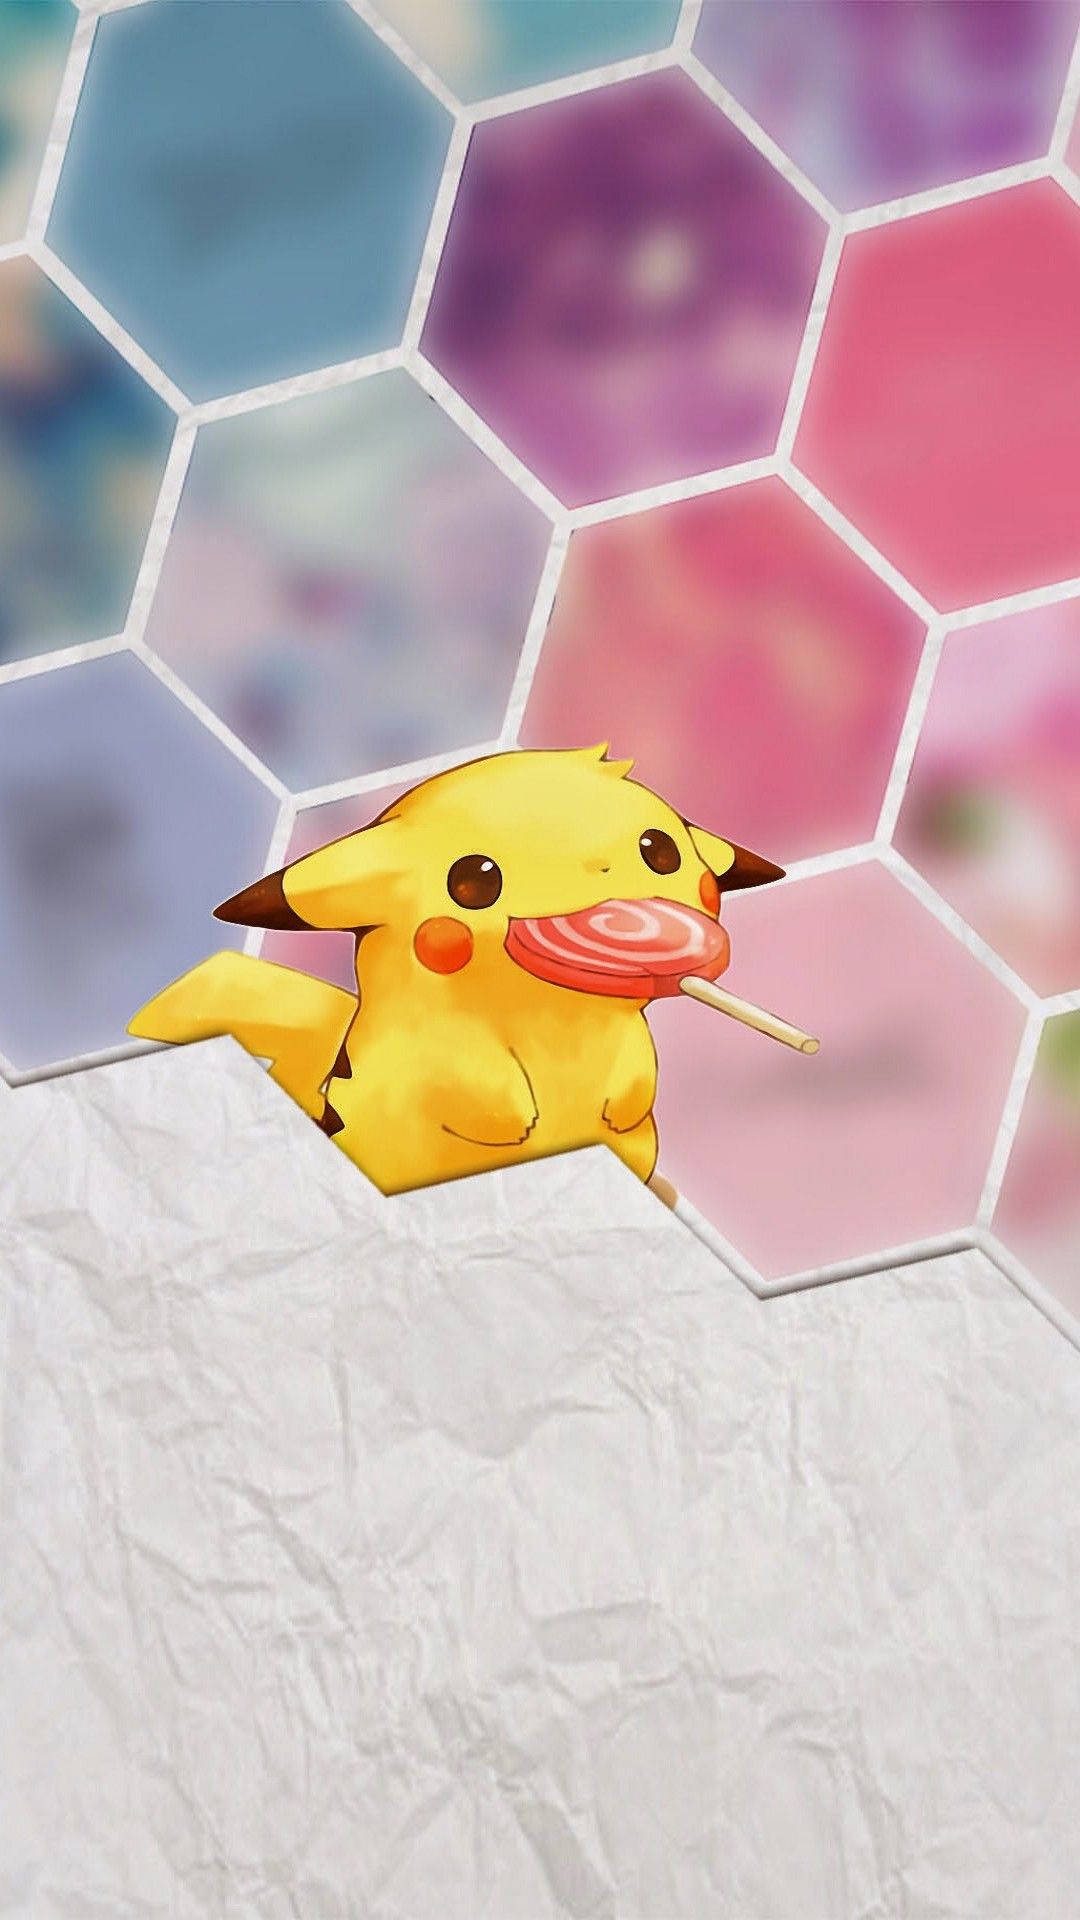 Pikachu. Pikachu, Cute pikachu wallpaper, Pikachu art